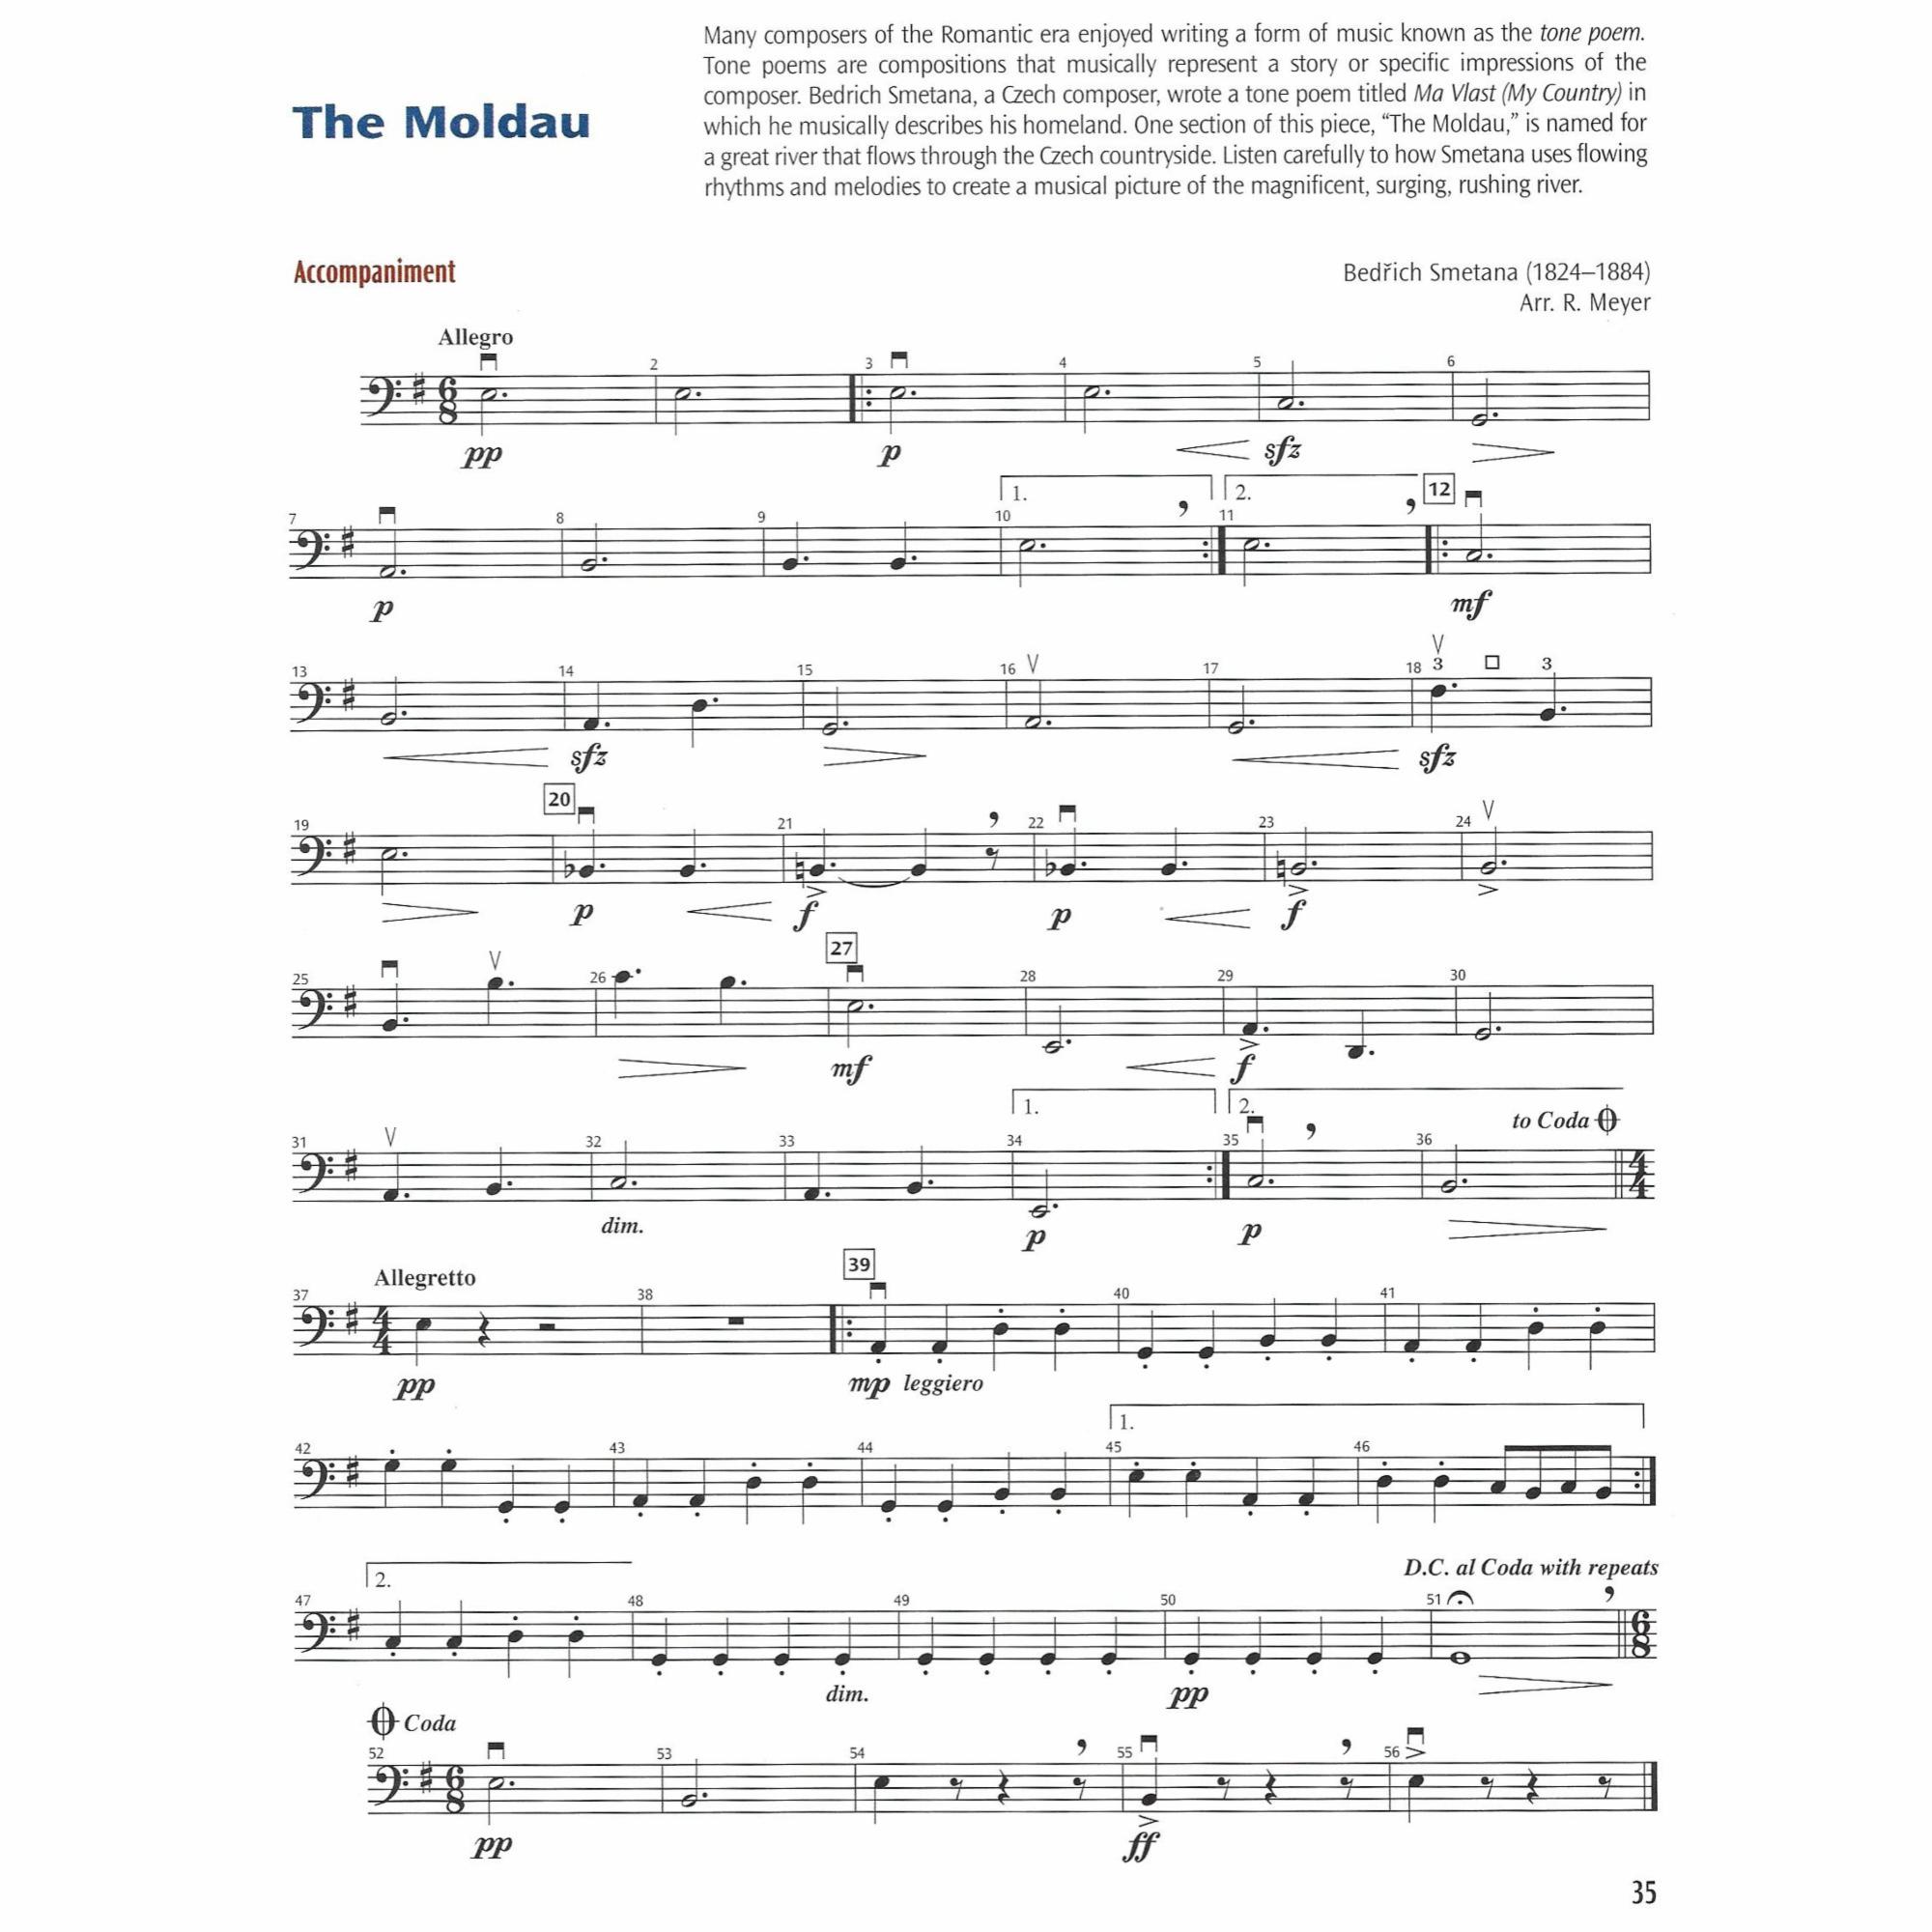 Sample: Cello (Pg. 35)